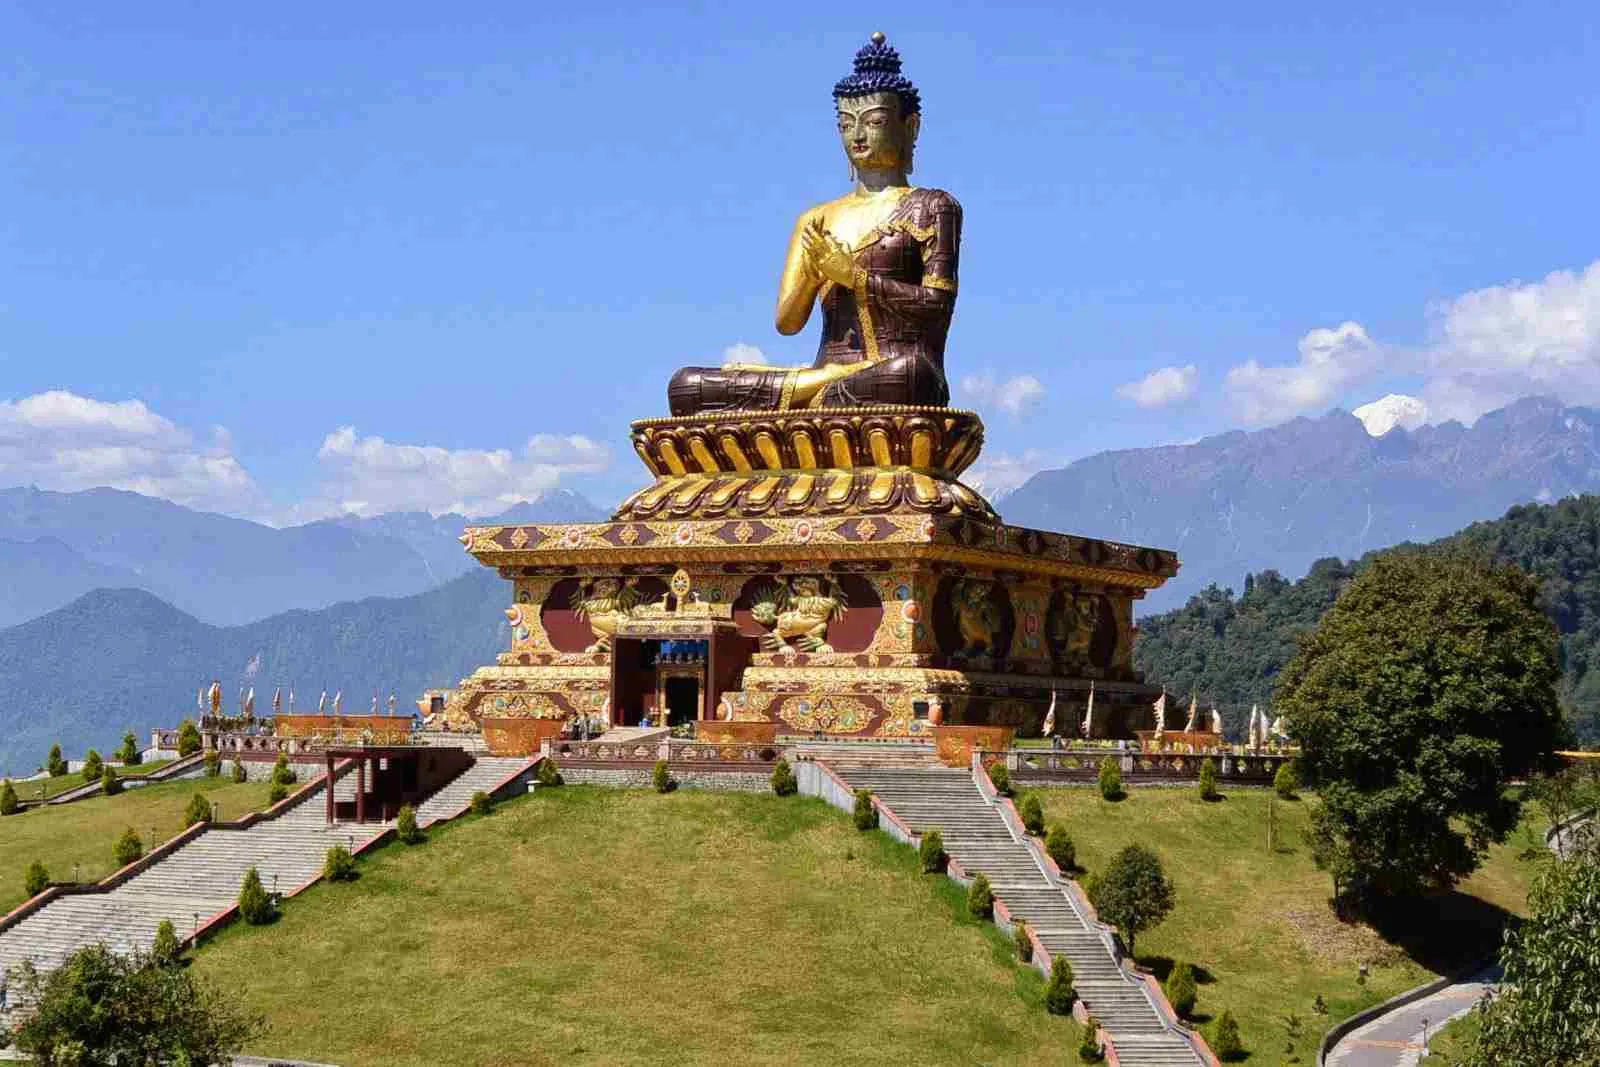 जून की भीषण गर्मी से पाना चाहते हैं राहत तो आप भी अपने परिवार के साथ जरूर करें सिक्किम की इन जगहों की सैर, मिलेगा सुकून